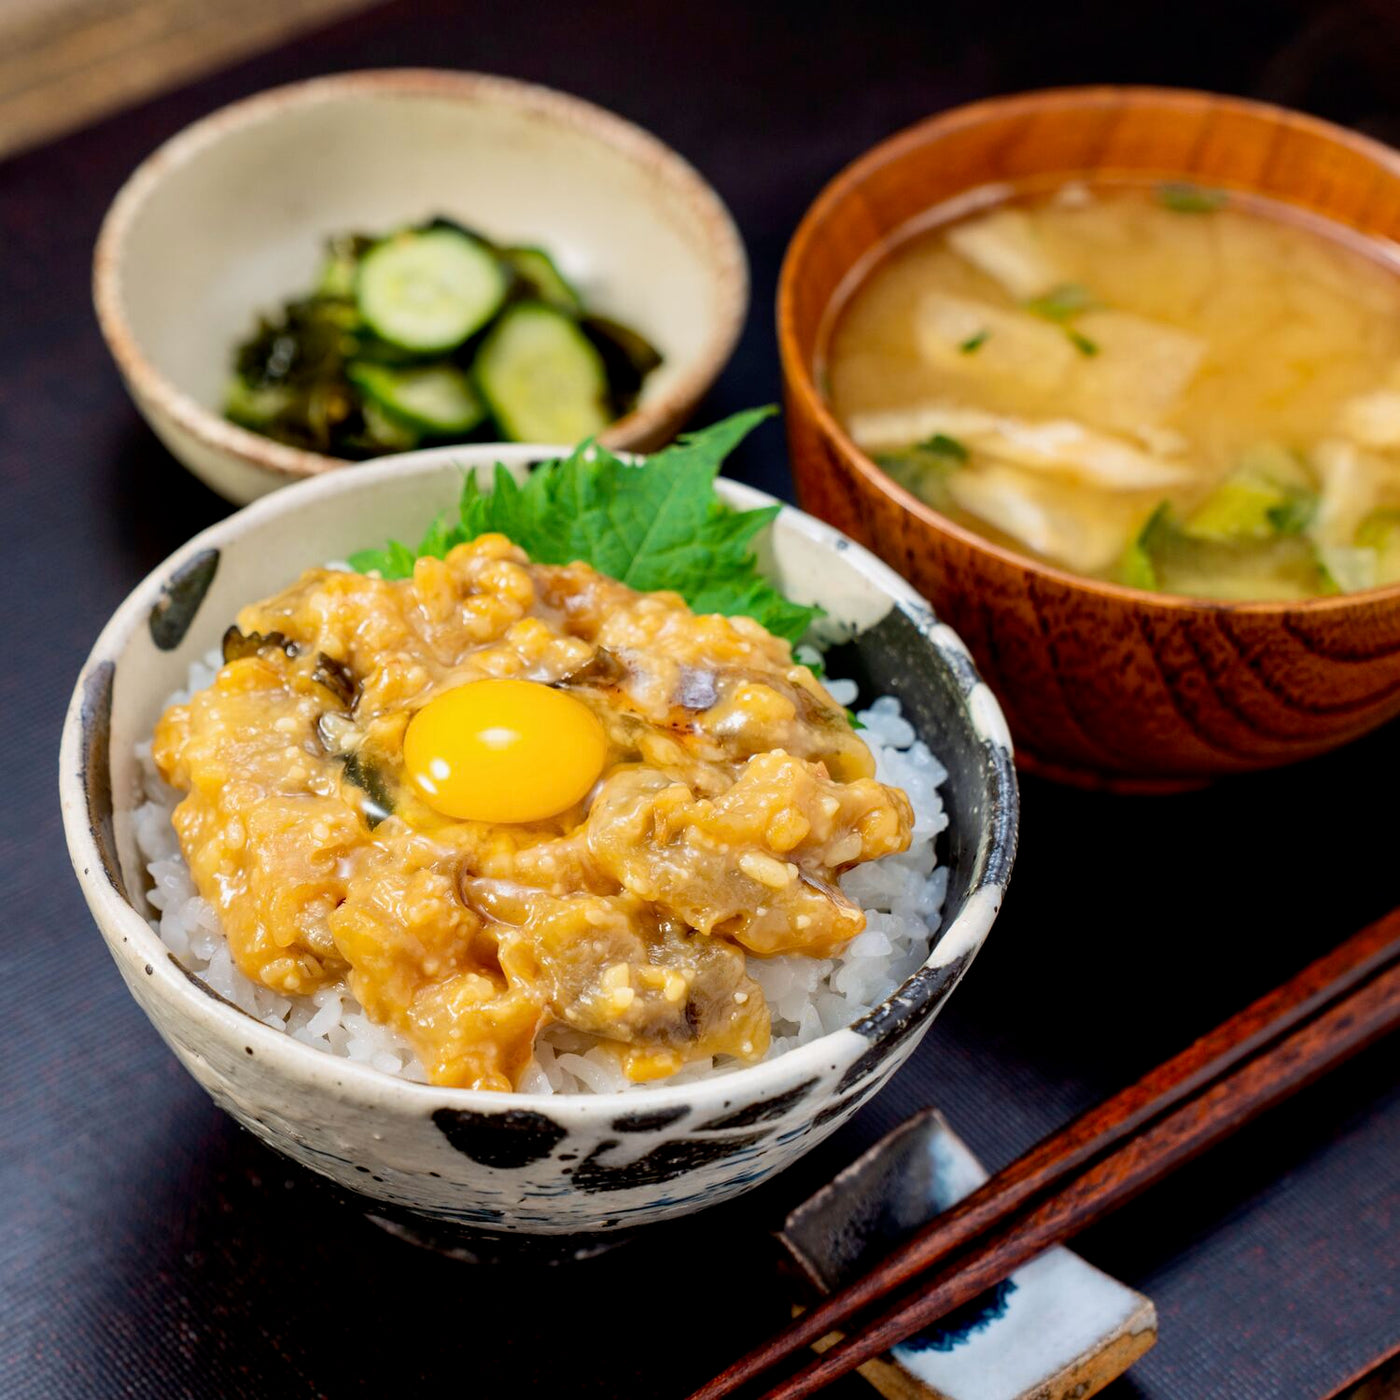 北海道産真ほっけの追い糀味噌漬が乗ったご飯,味噌汁,わかめときゅうりの酢の物